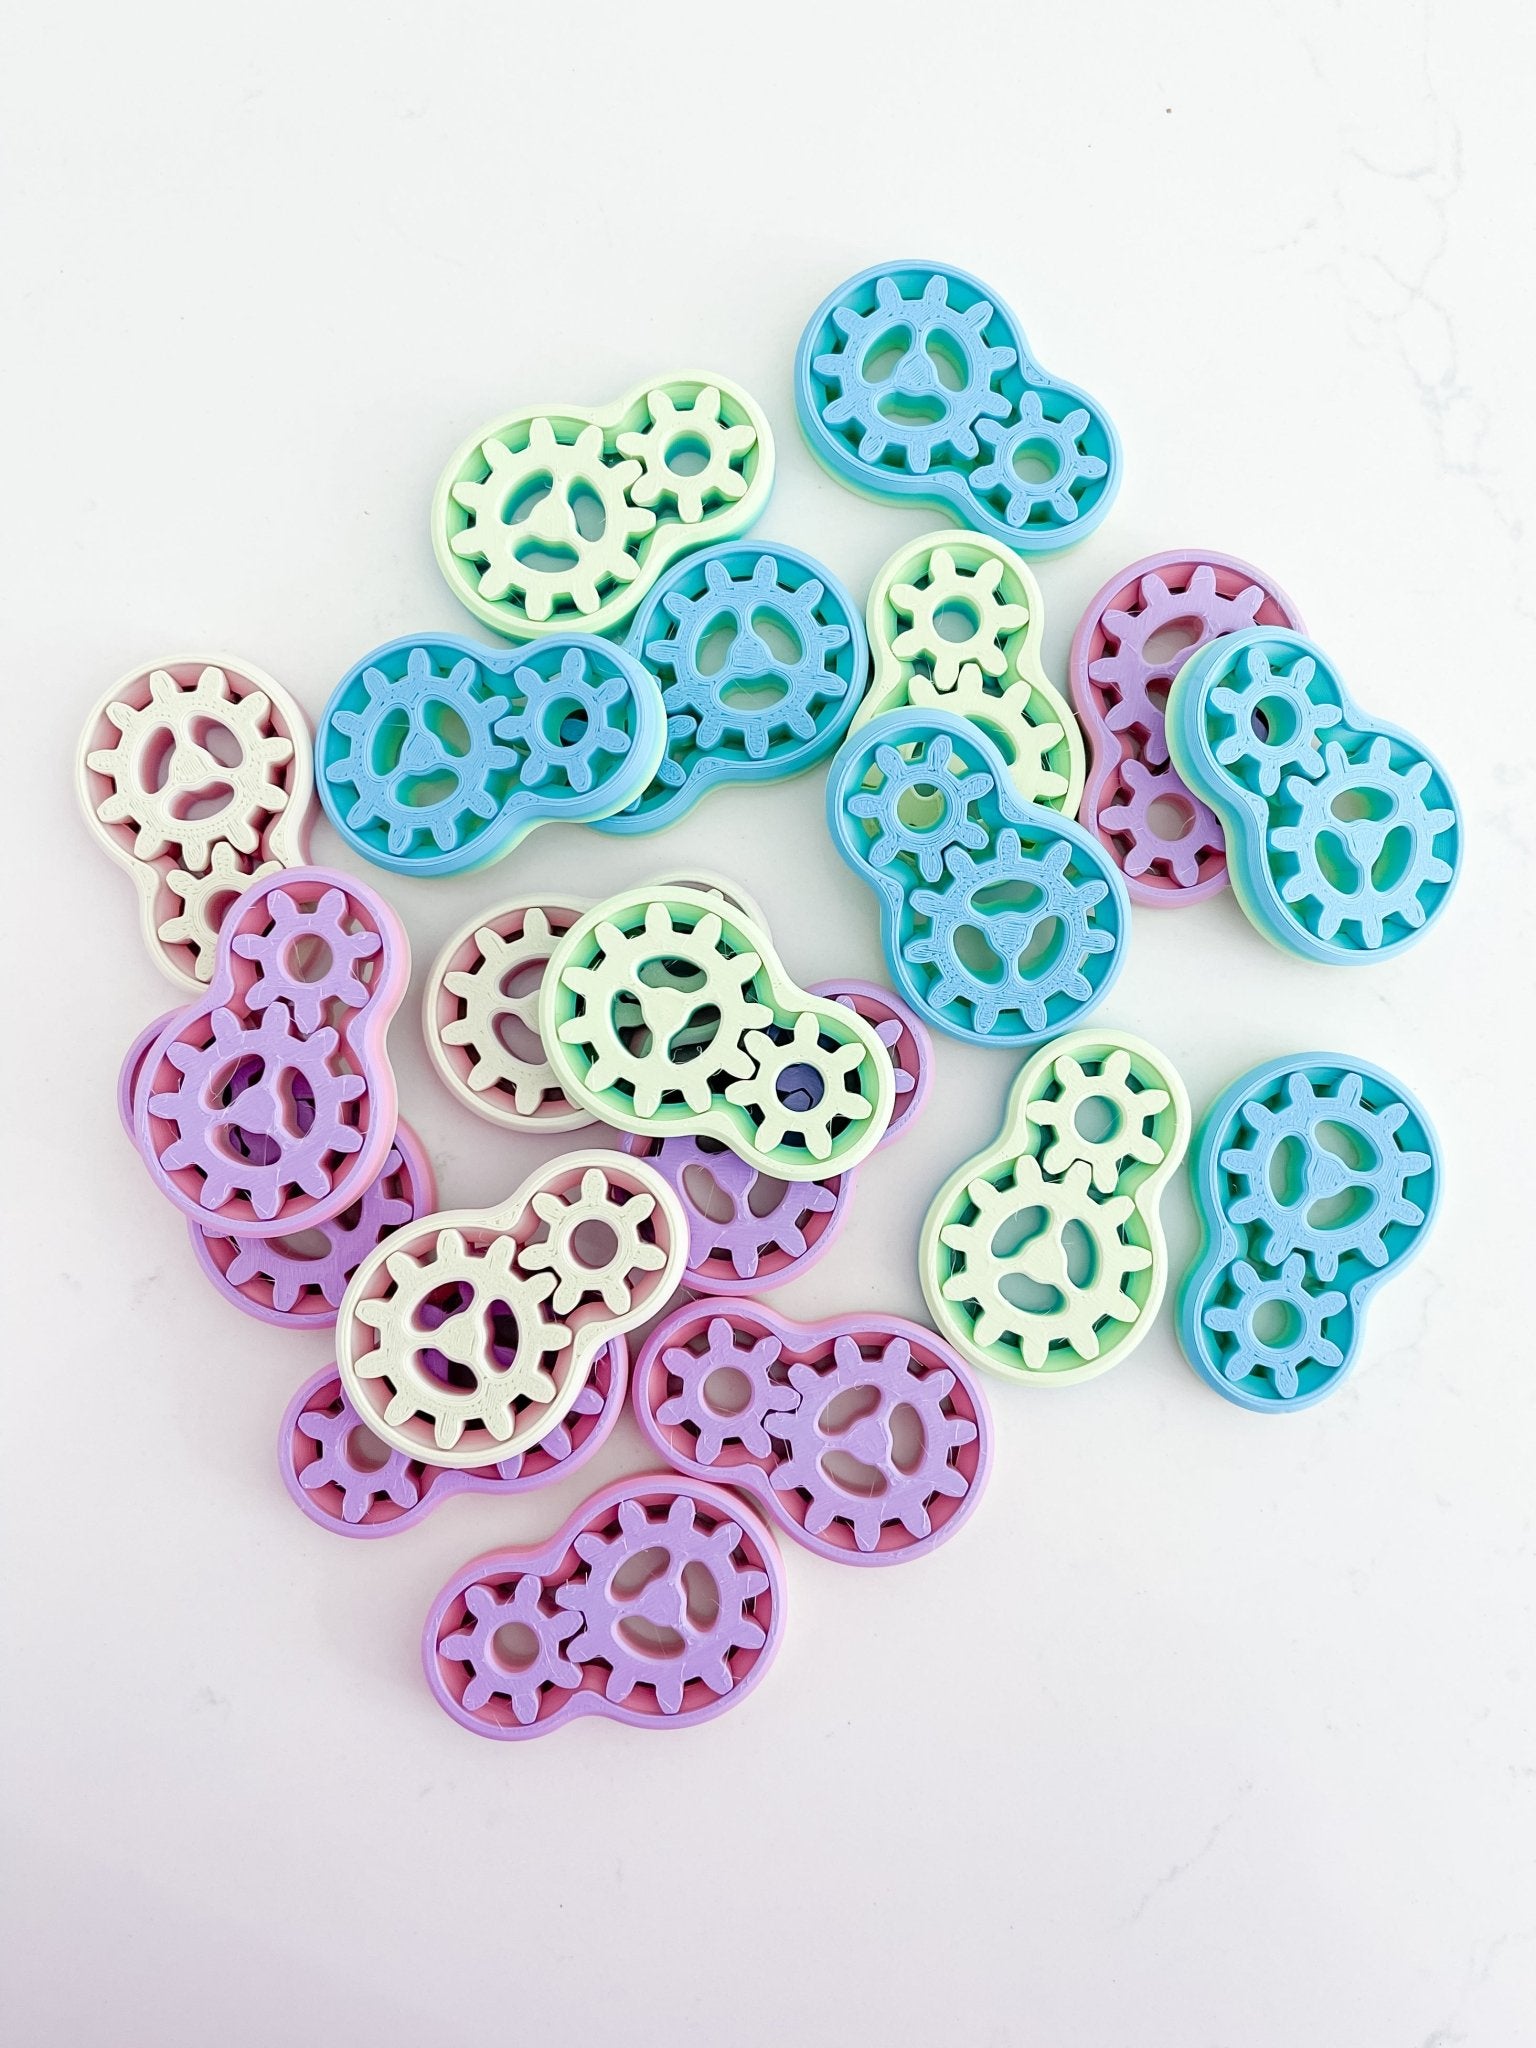 Multicolor Double Gear Fidget Toy - Designs by Lauren Ann